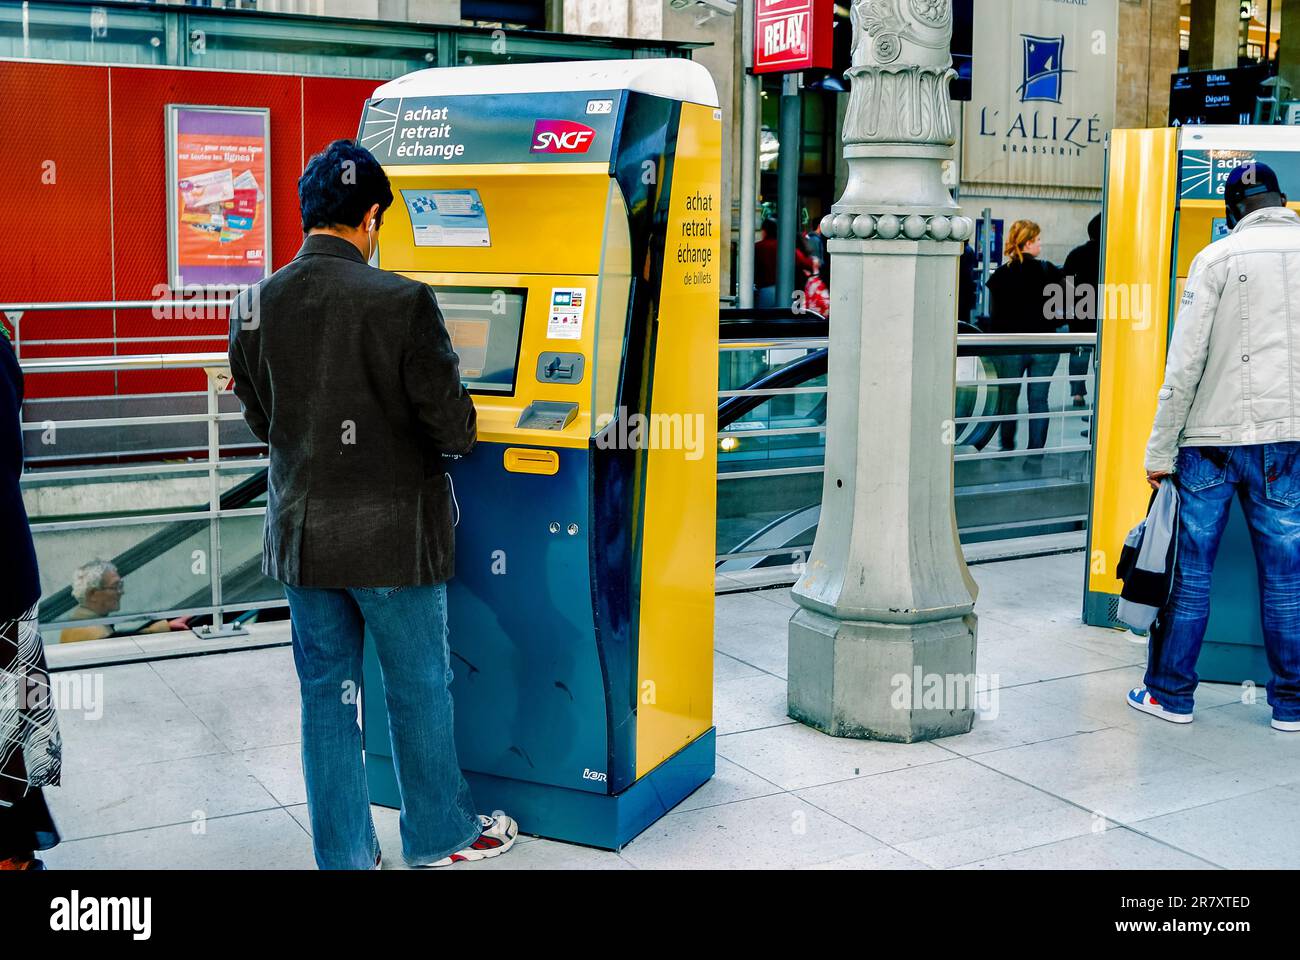 París, Francia- Estación de tren Gare du Nord, hombre que compra el billete de tren de la máquina expendedora, ordenador de pantalla táctil, interior, para el tren Eurostar Foto de stock